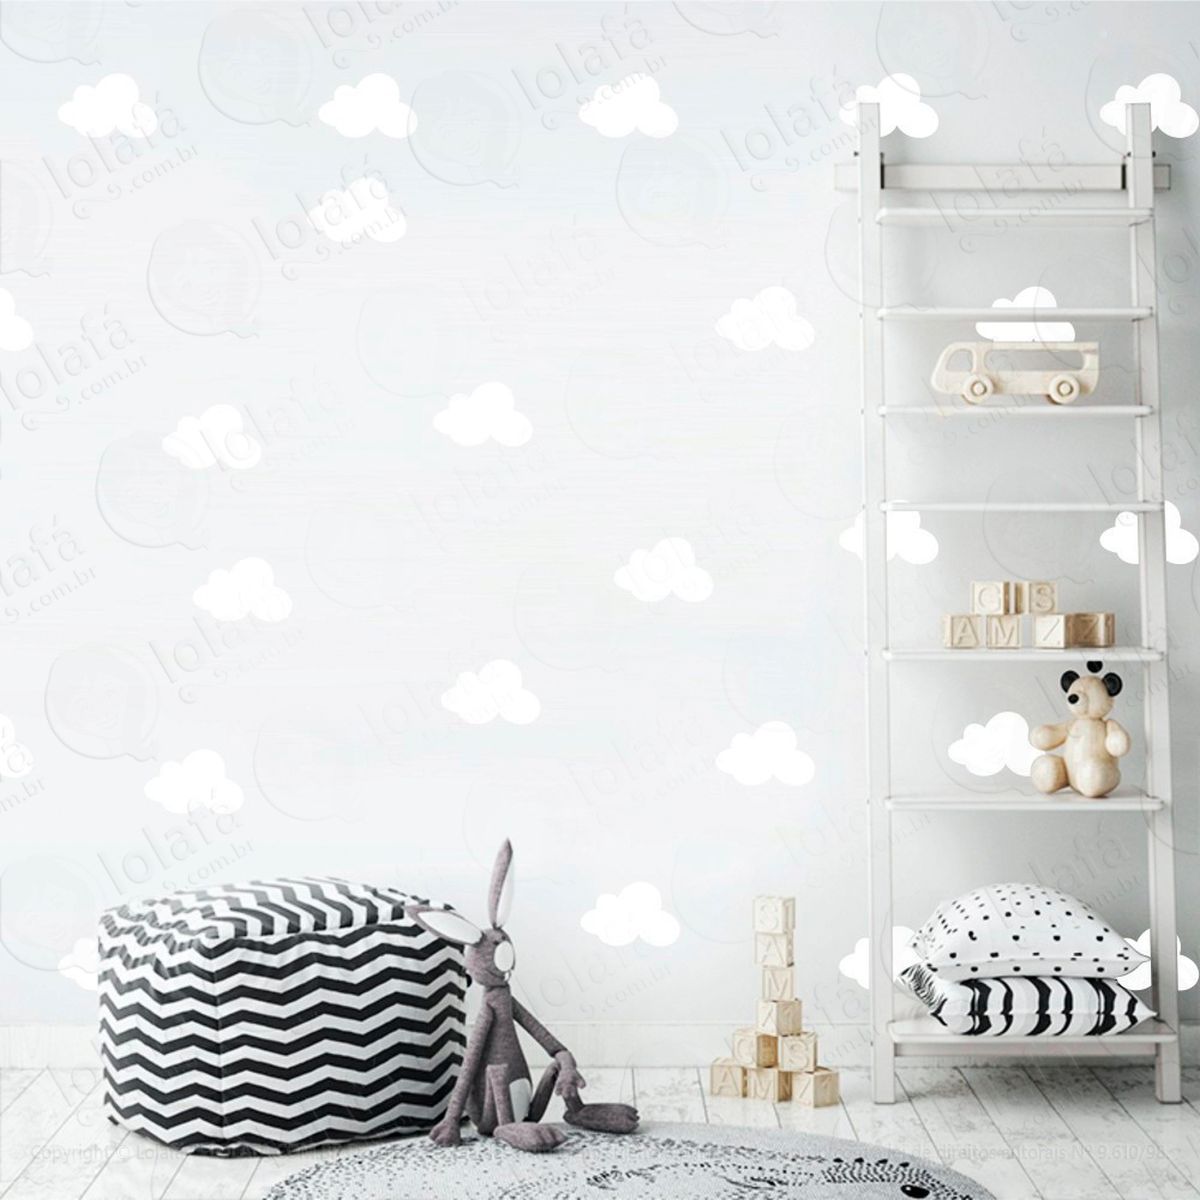 adesivos nuvens 36 peças adesivos para quarto de bebê infantil - mod:986